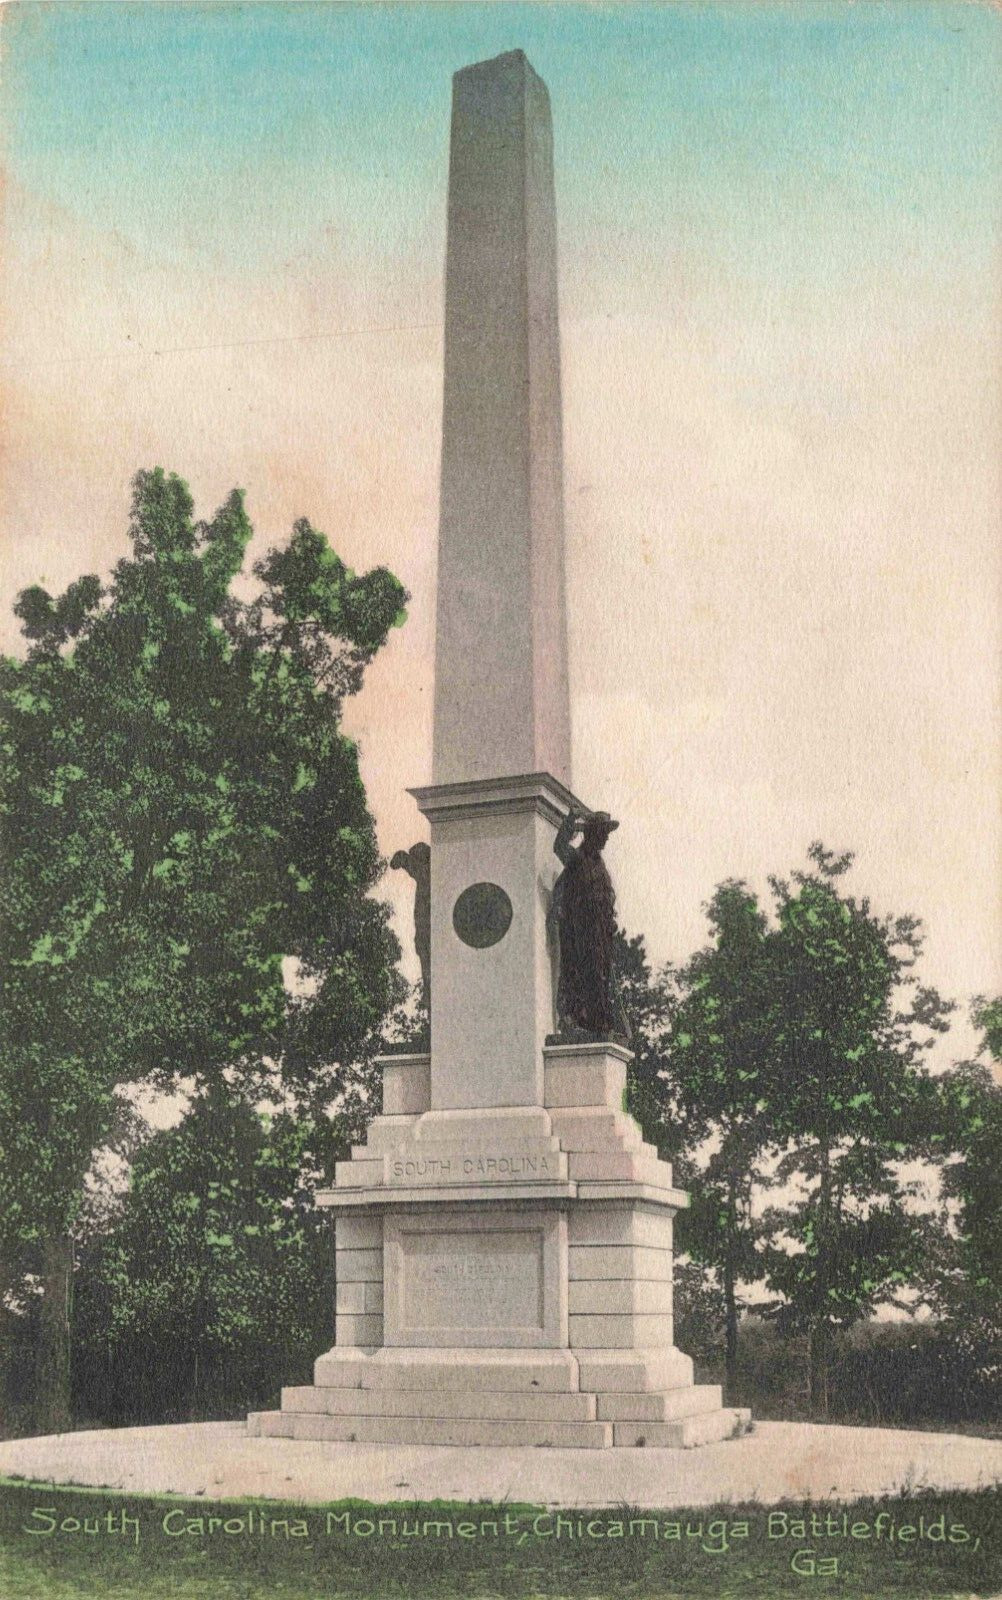 Chicamauga Battlefields Ga South Carolina Monument 1911 Georgia GA18